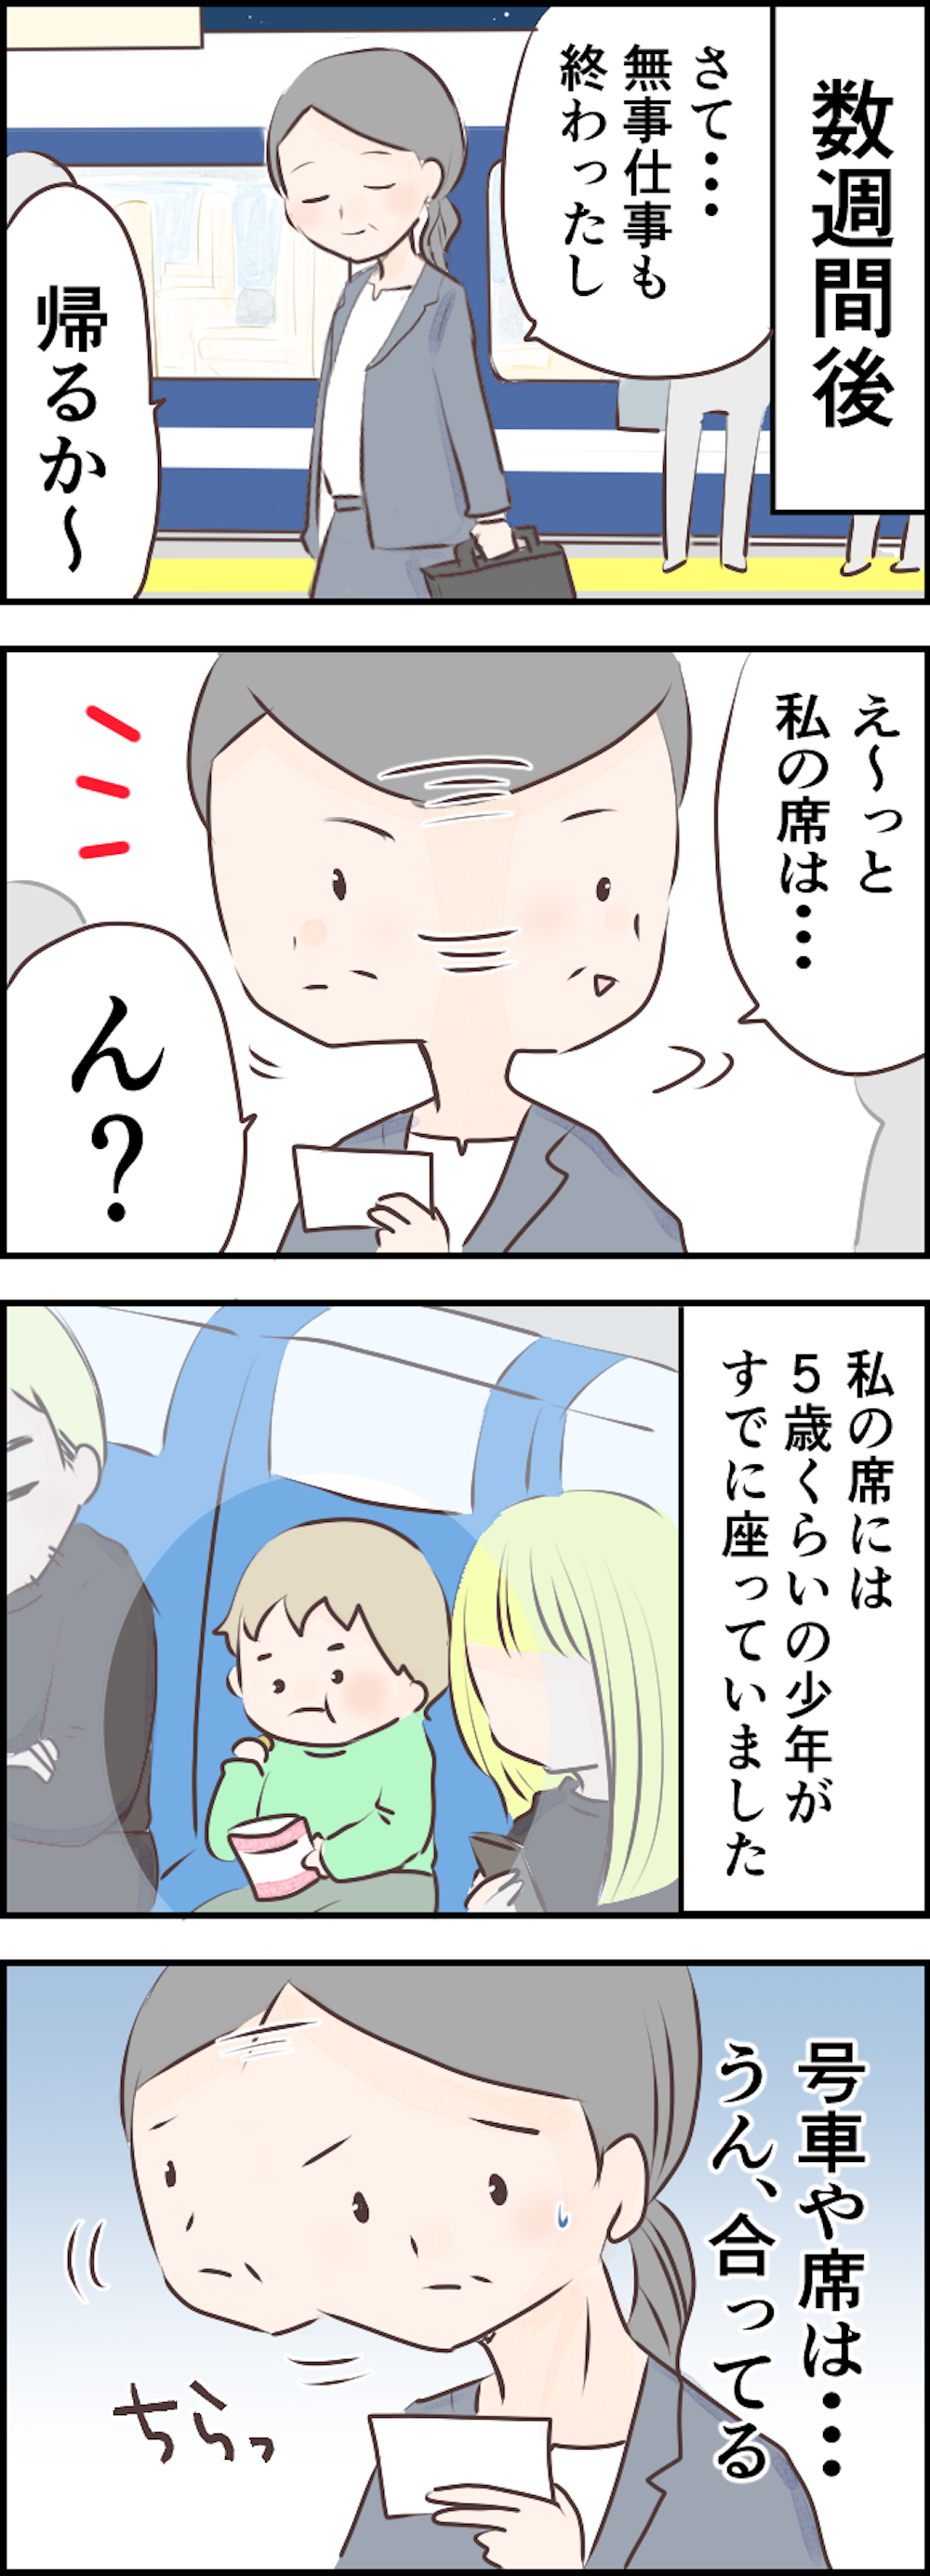 【非常識親子】新幹線の私の席を占領して「うちら親子なんやから空気読んで」って何言ってるの【漫画】 21-2.png